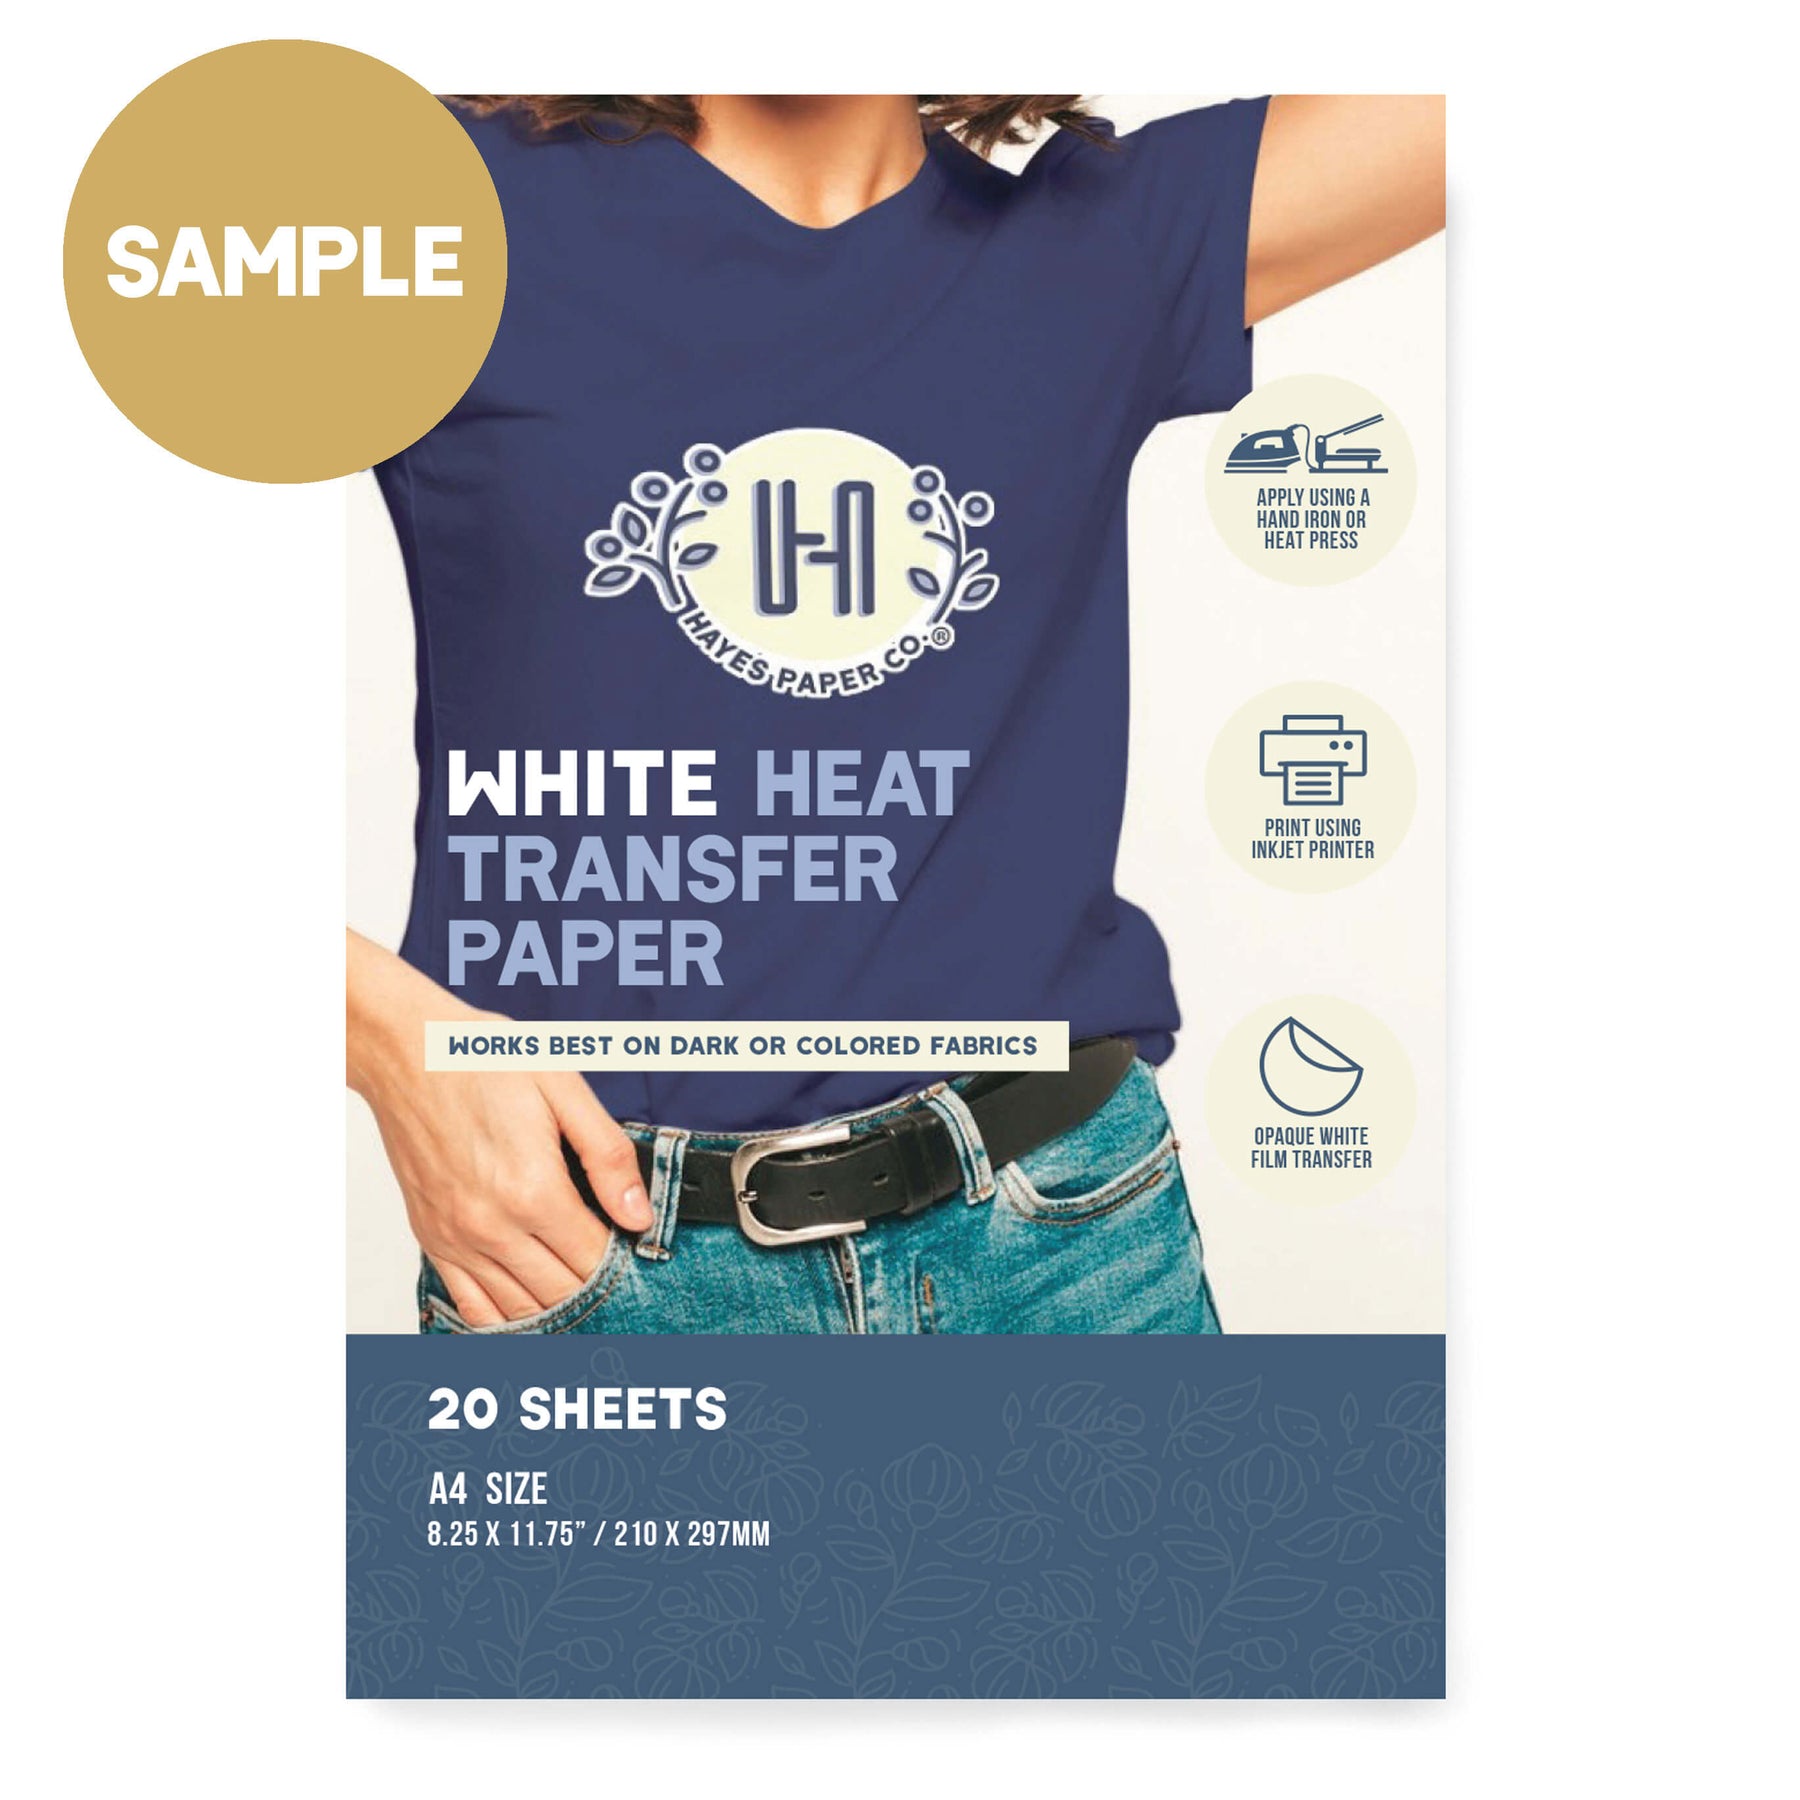 Printable Heat Transfer Material Samples